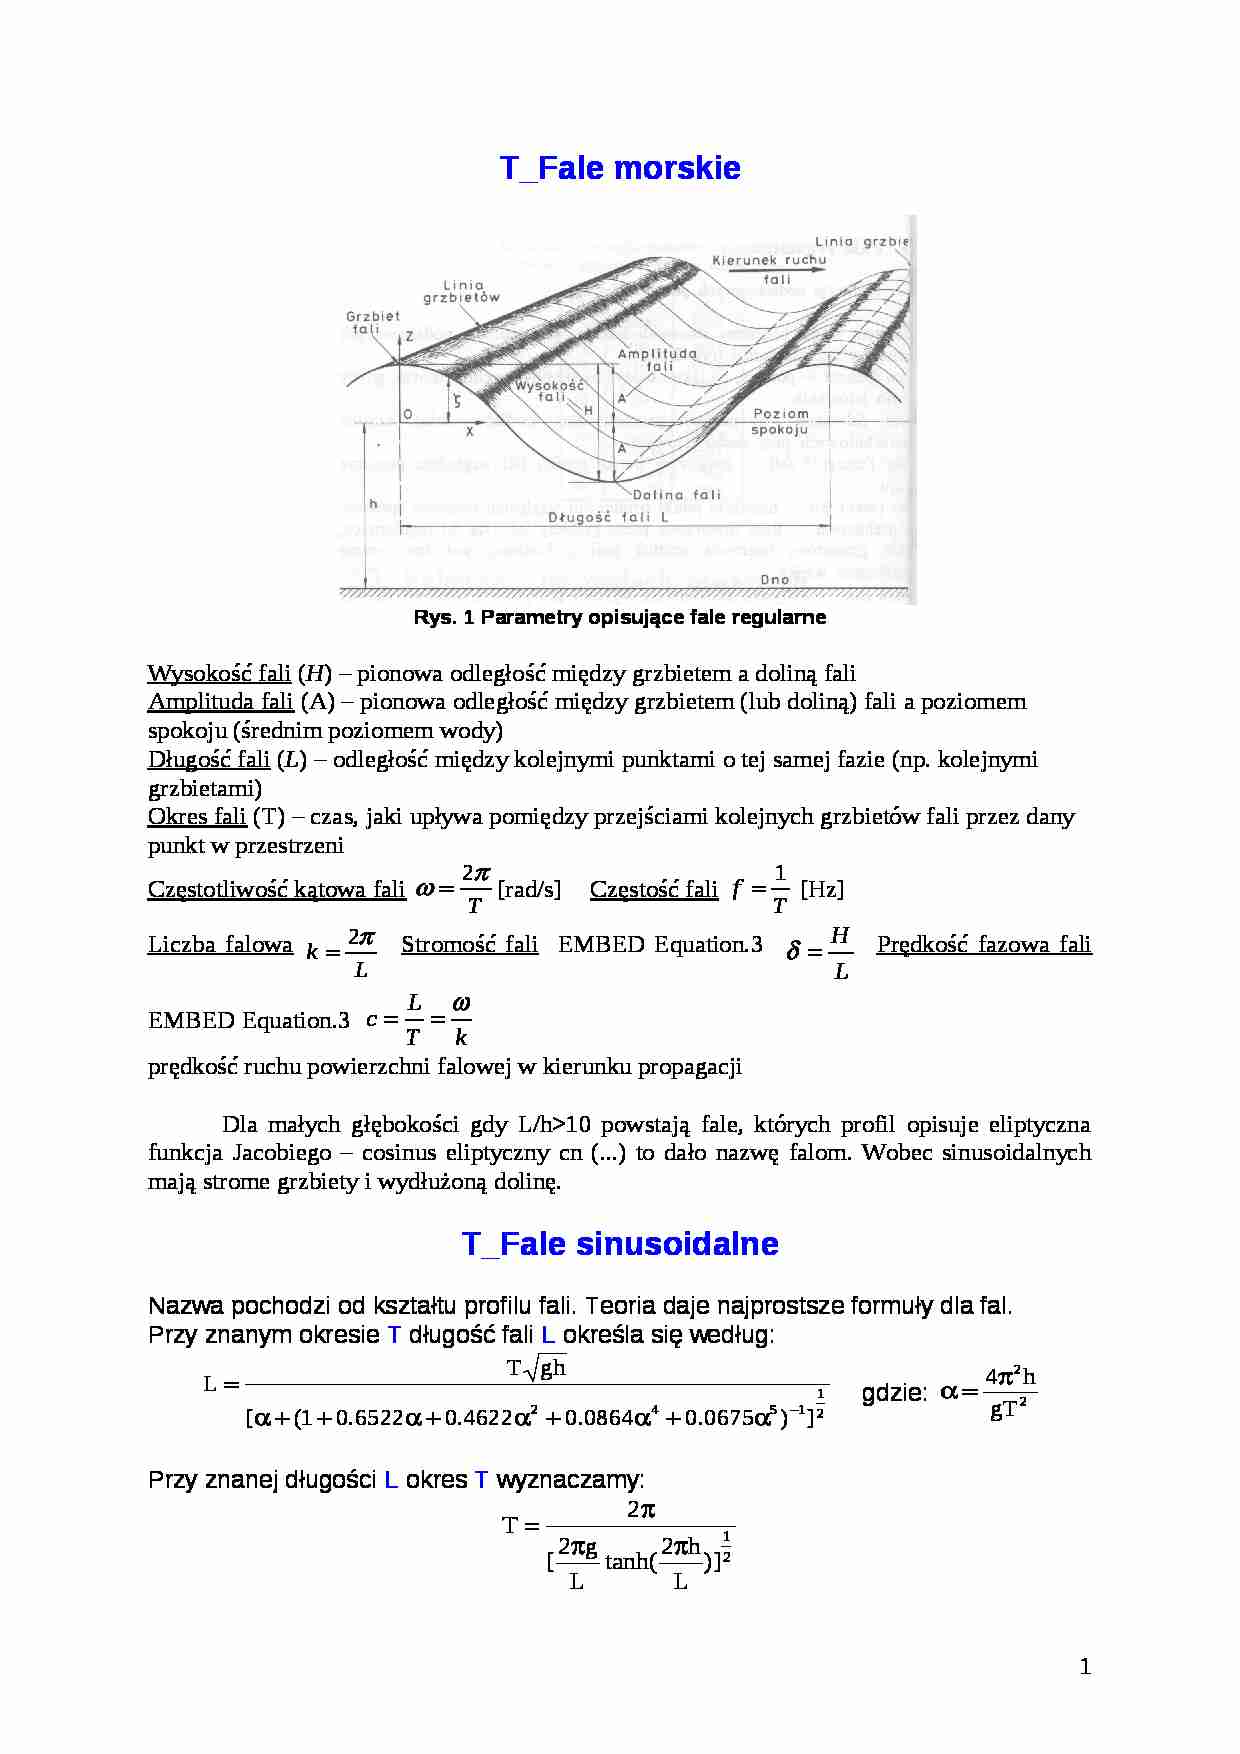 Falowanie regularne - parametry  - strona 1